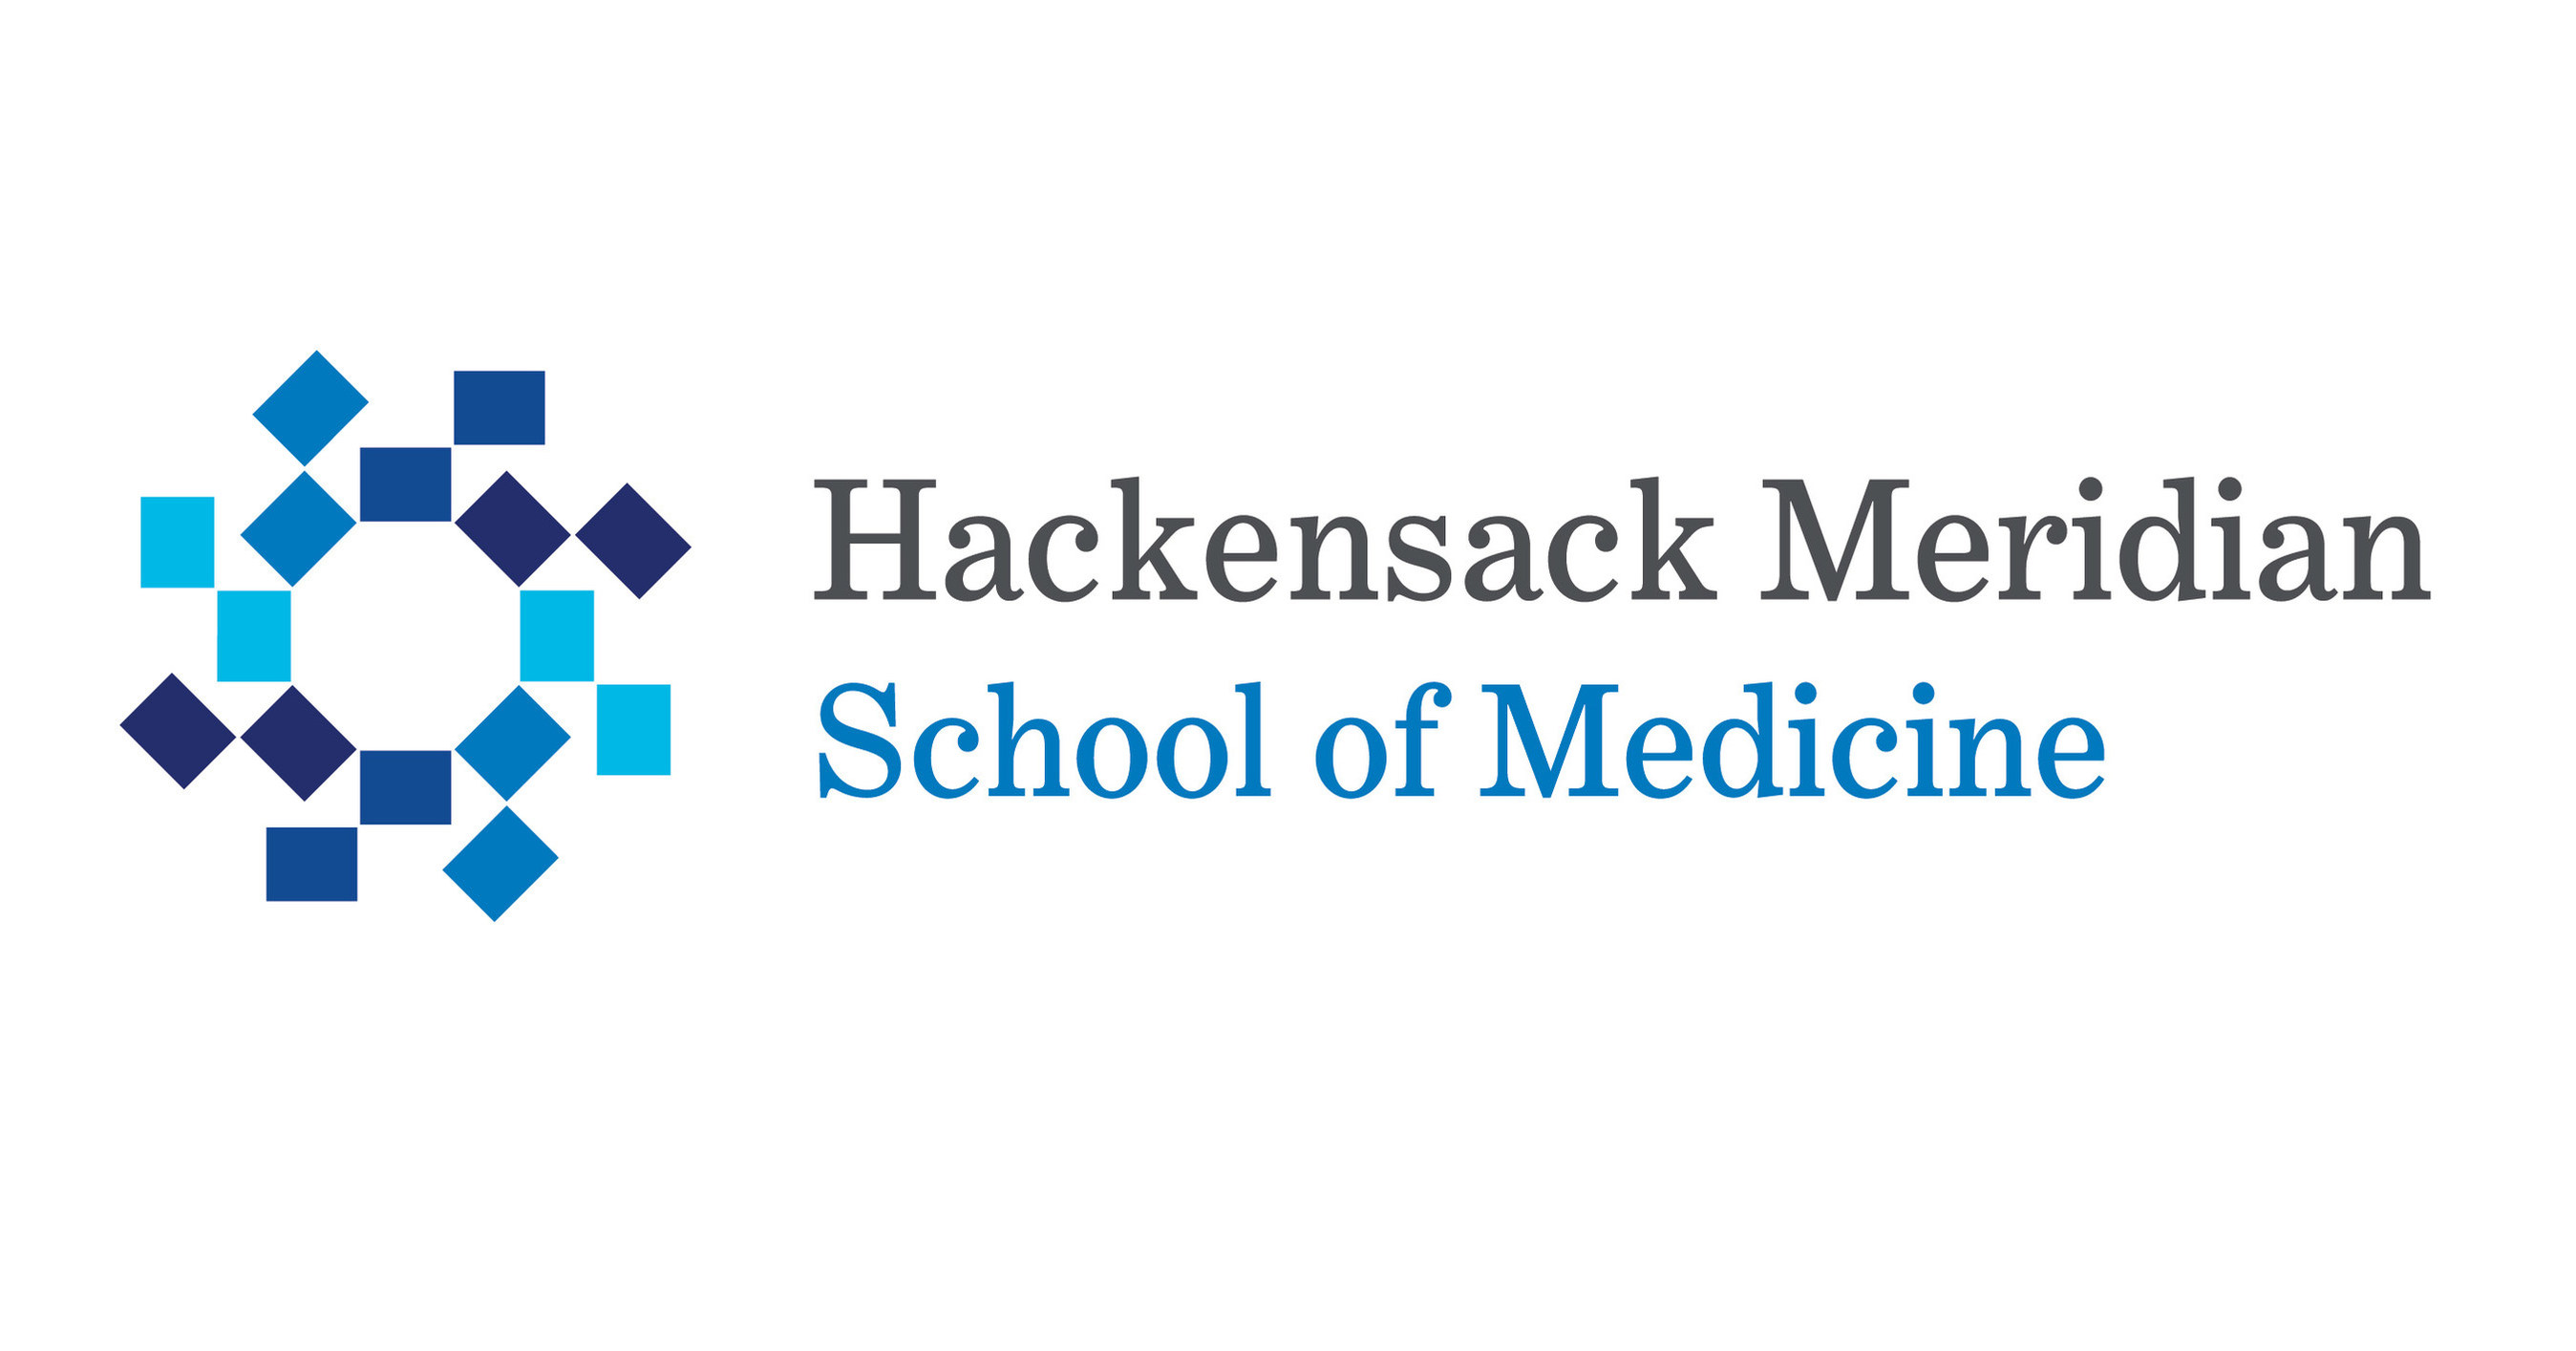 Hackensack Meridian School of Medicine